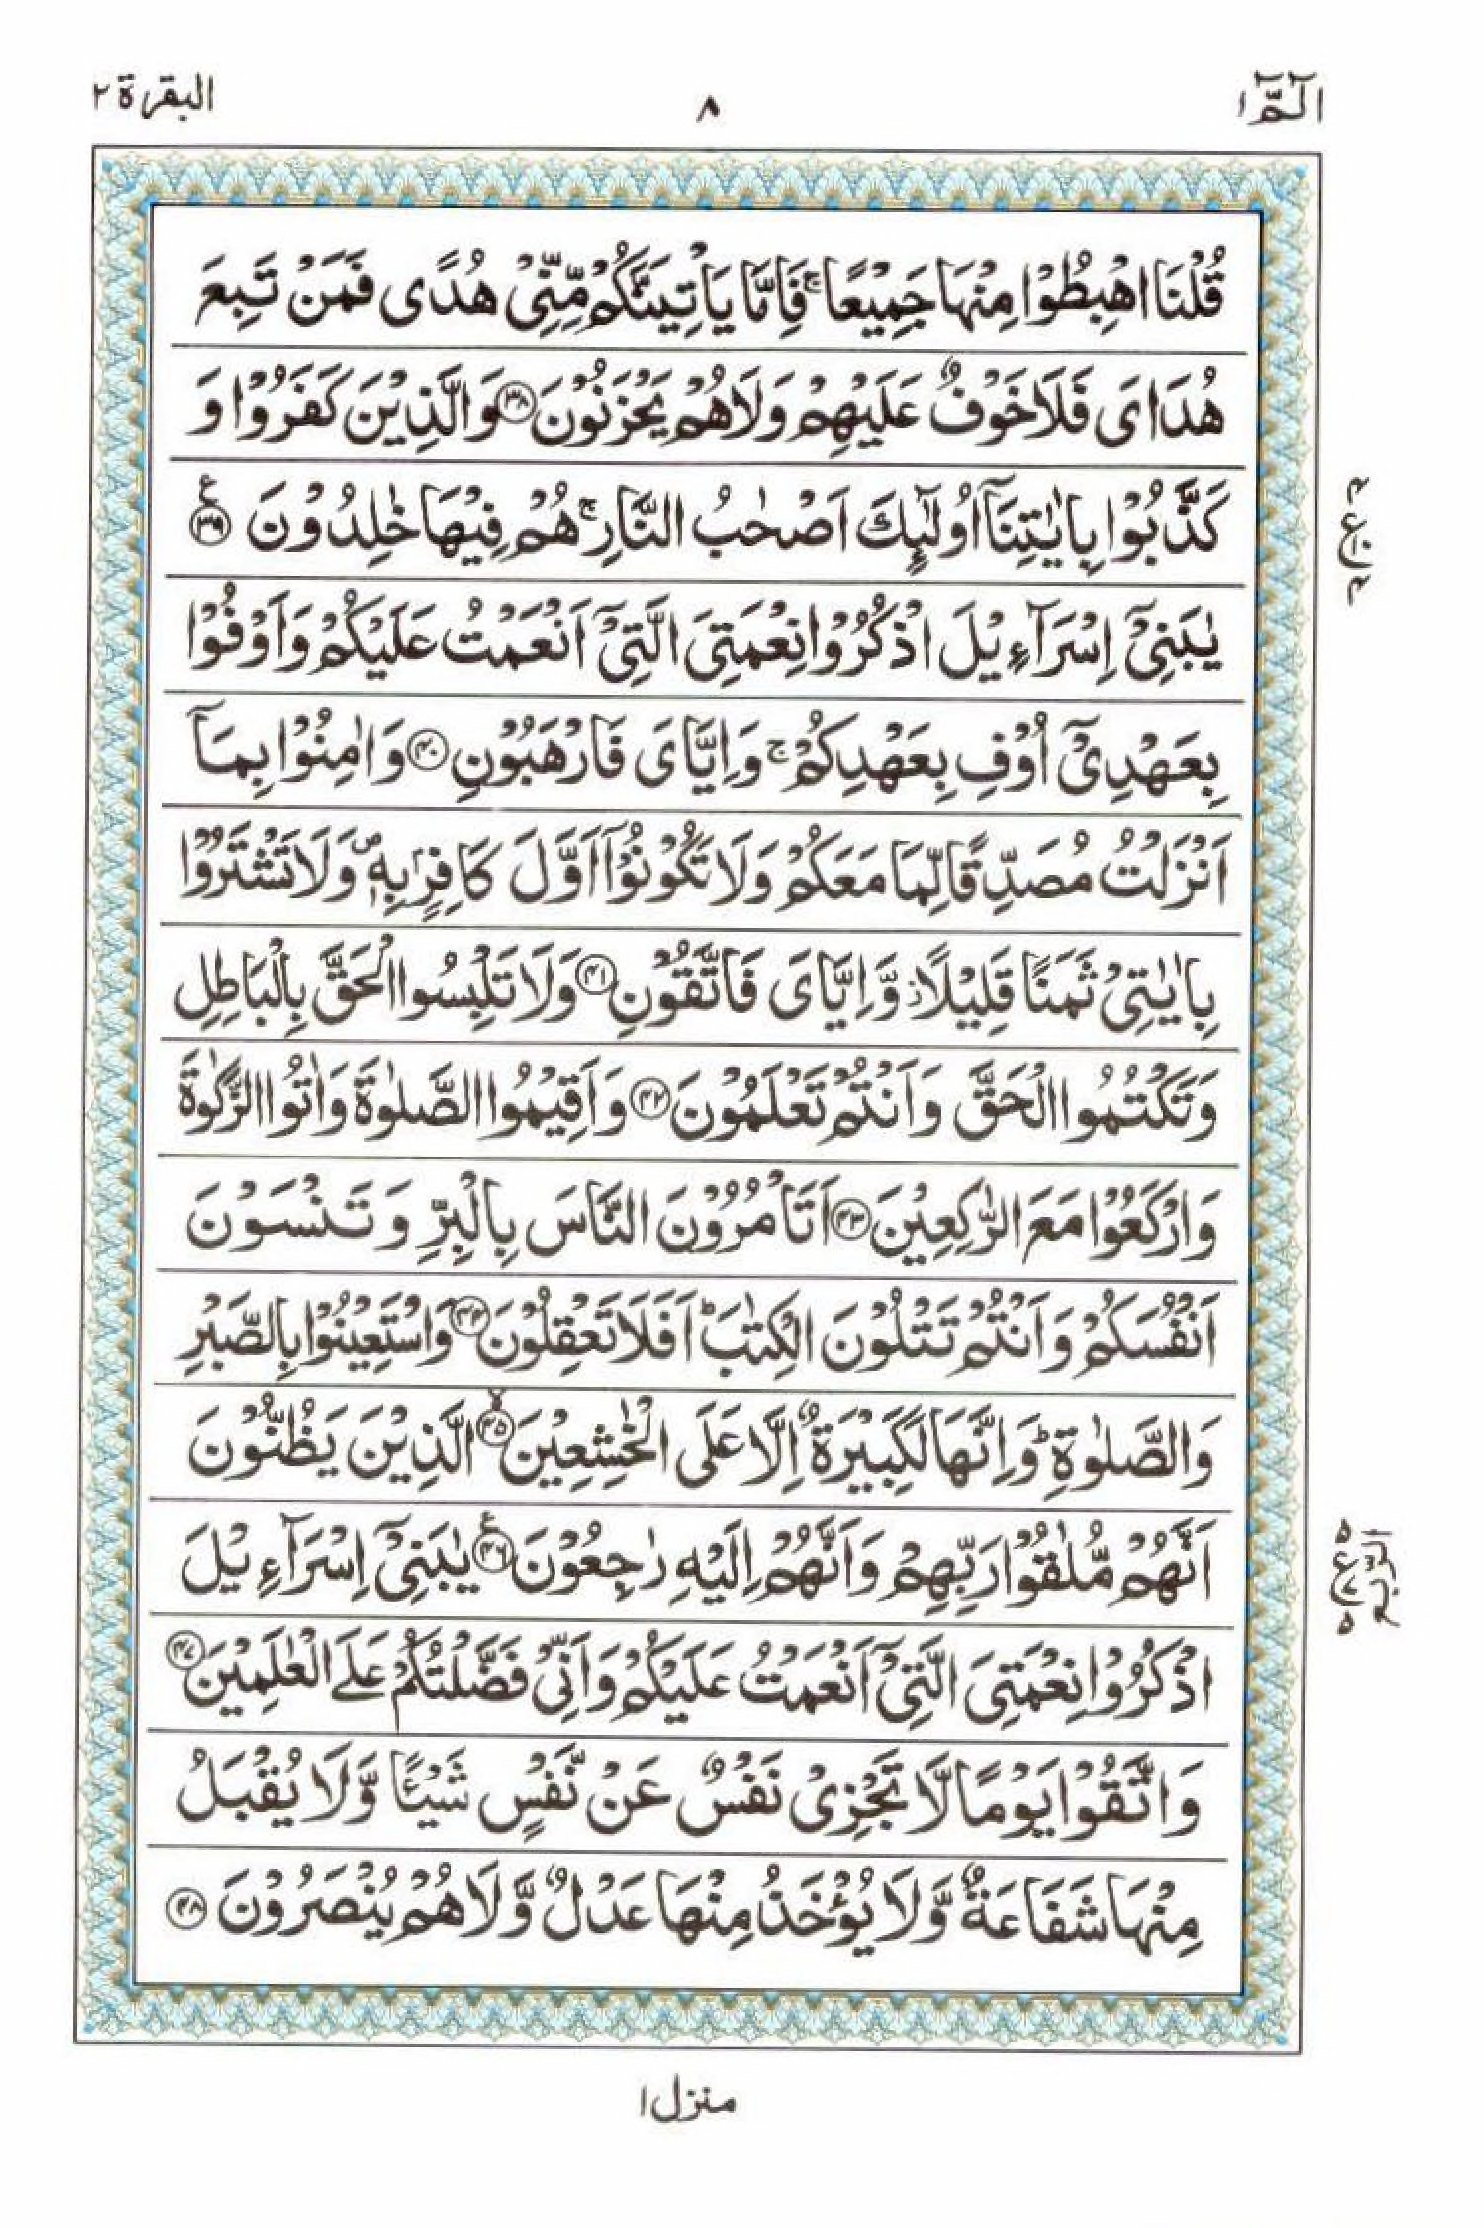 Read 15 Lines Al Quran Part 1 Page No 8, Practice Quran